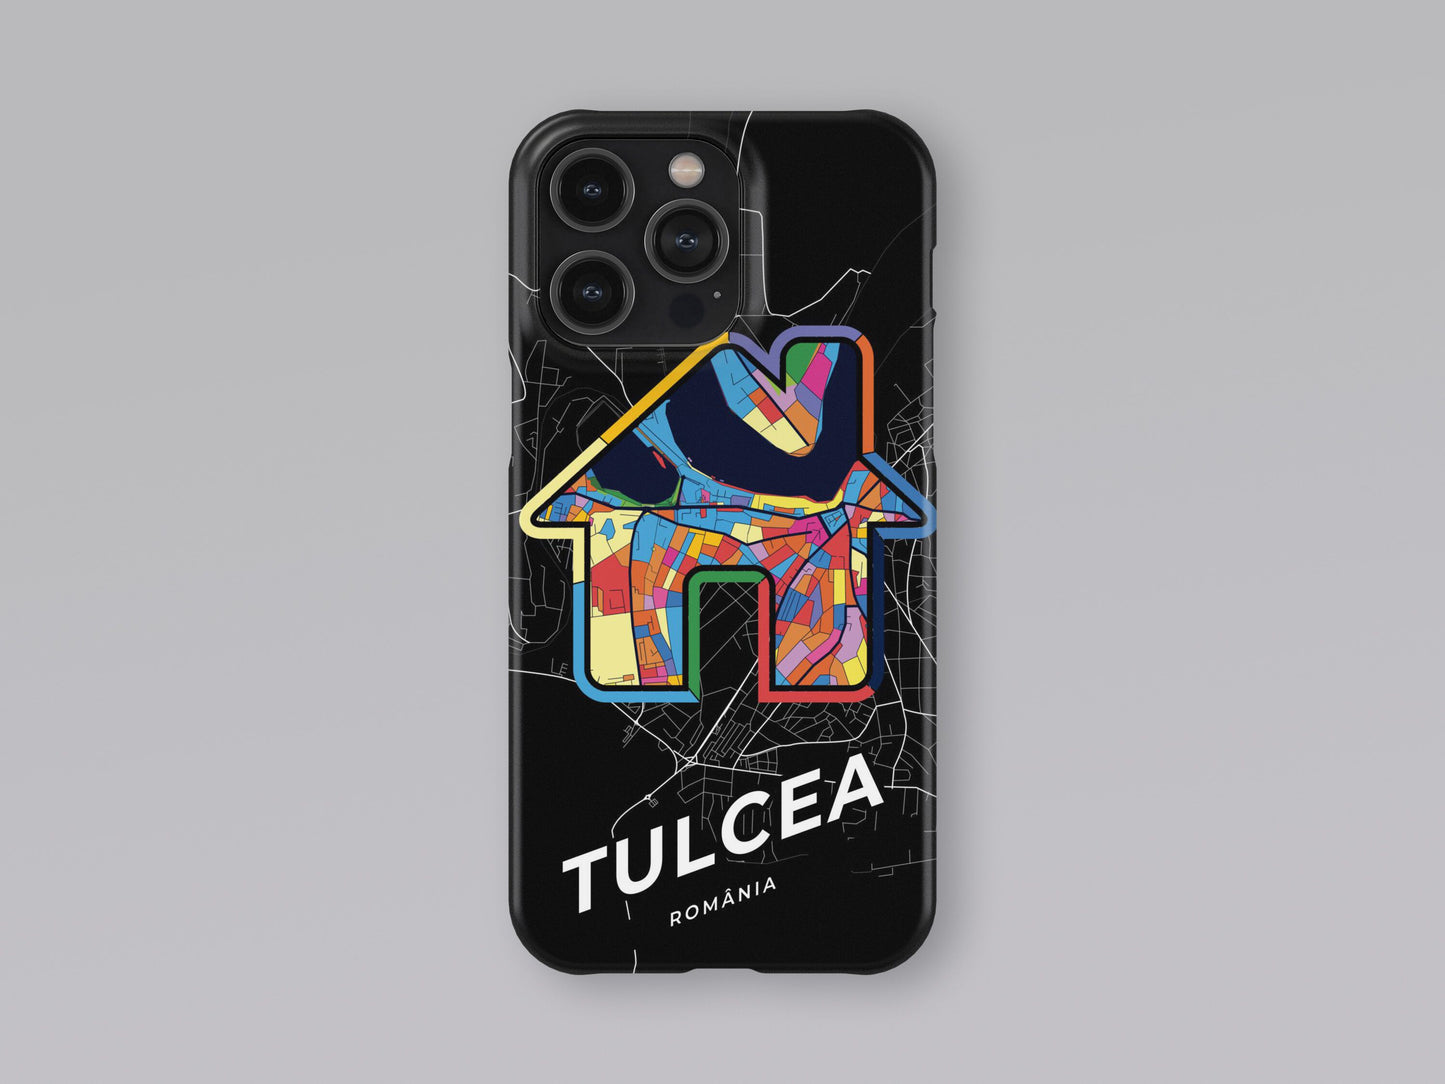 Tulcea Romania slim phone case with colorful icon 3